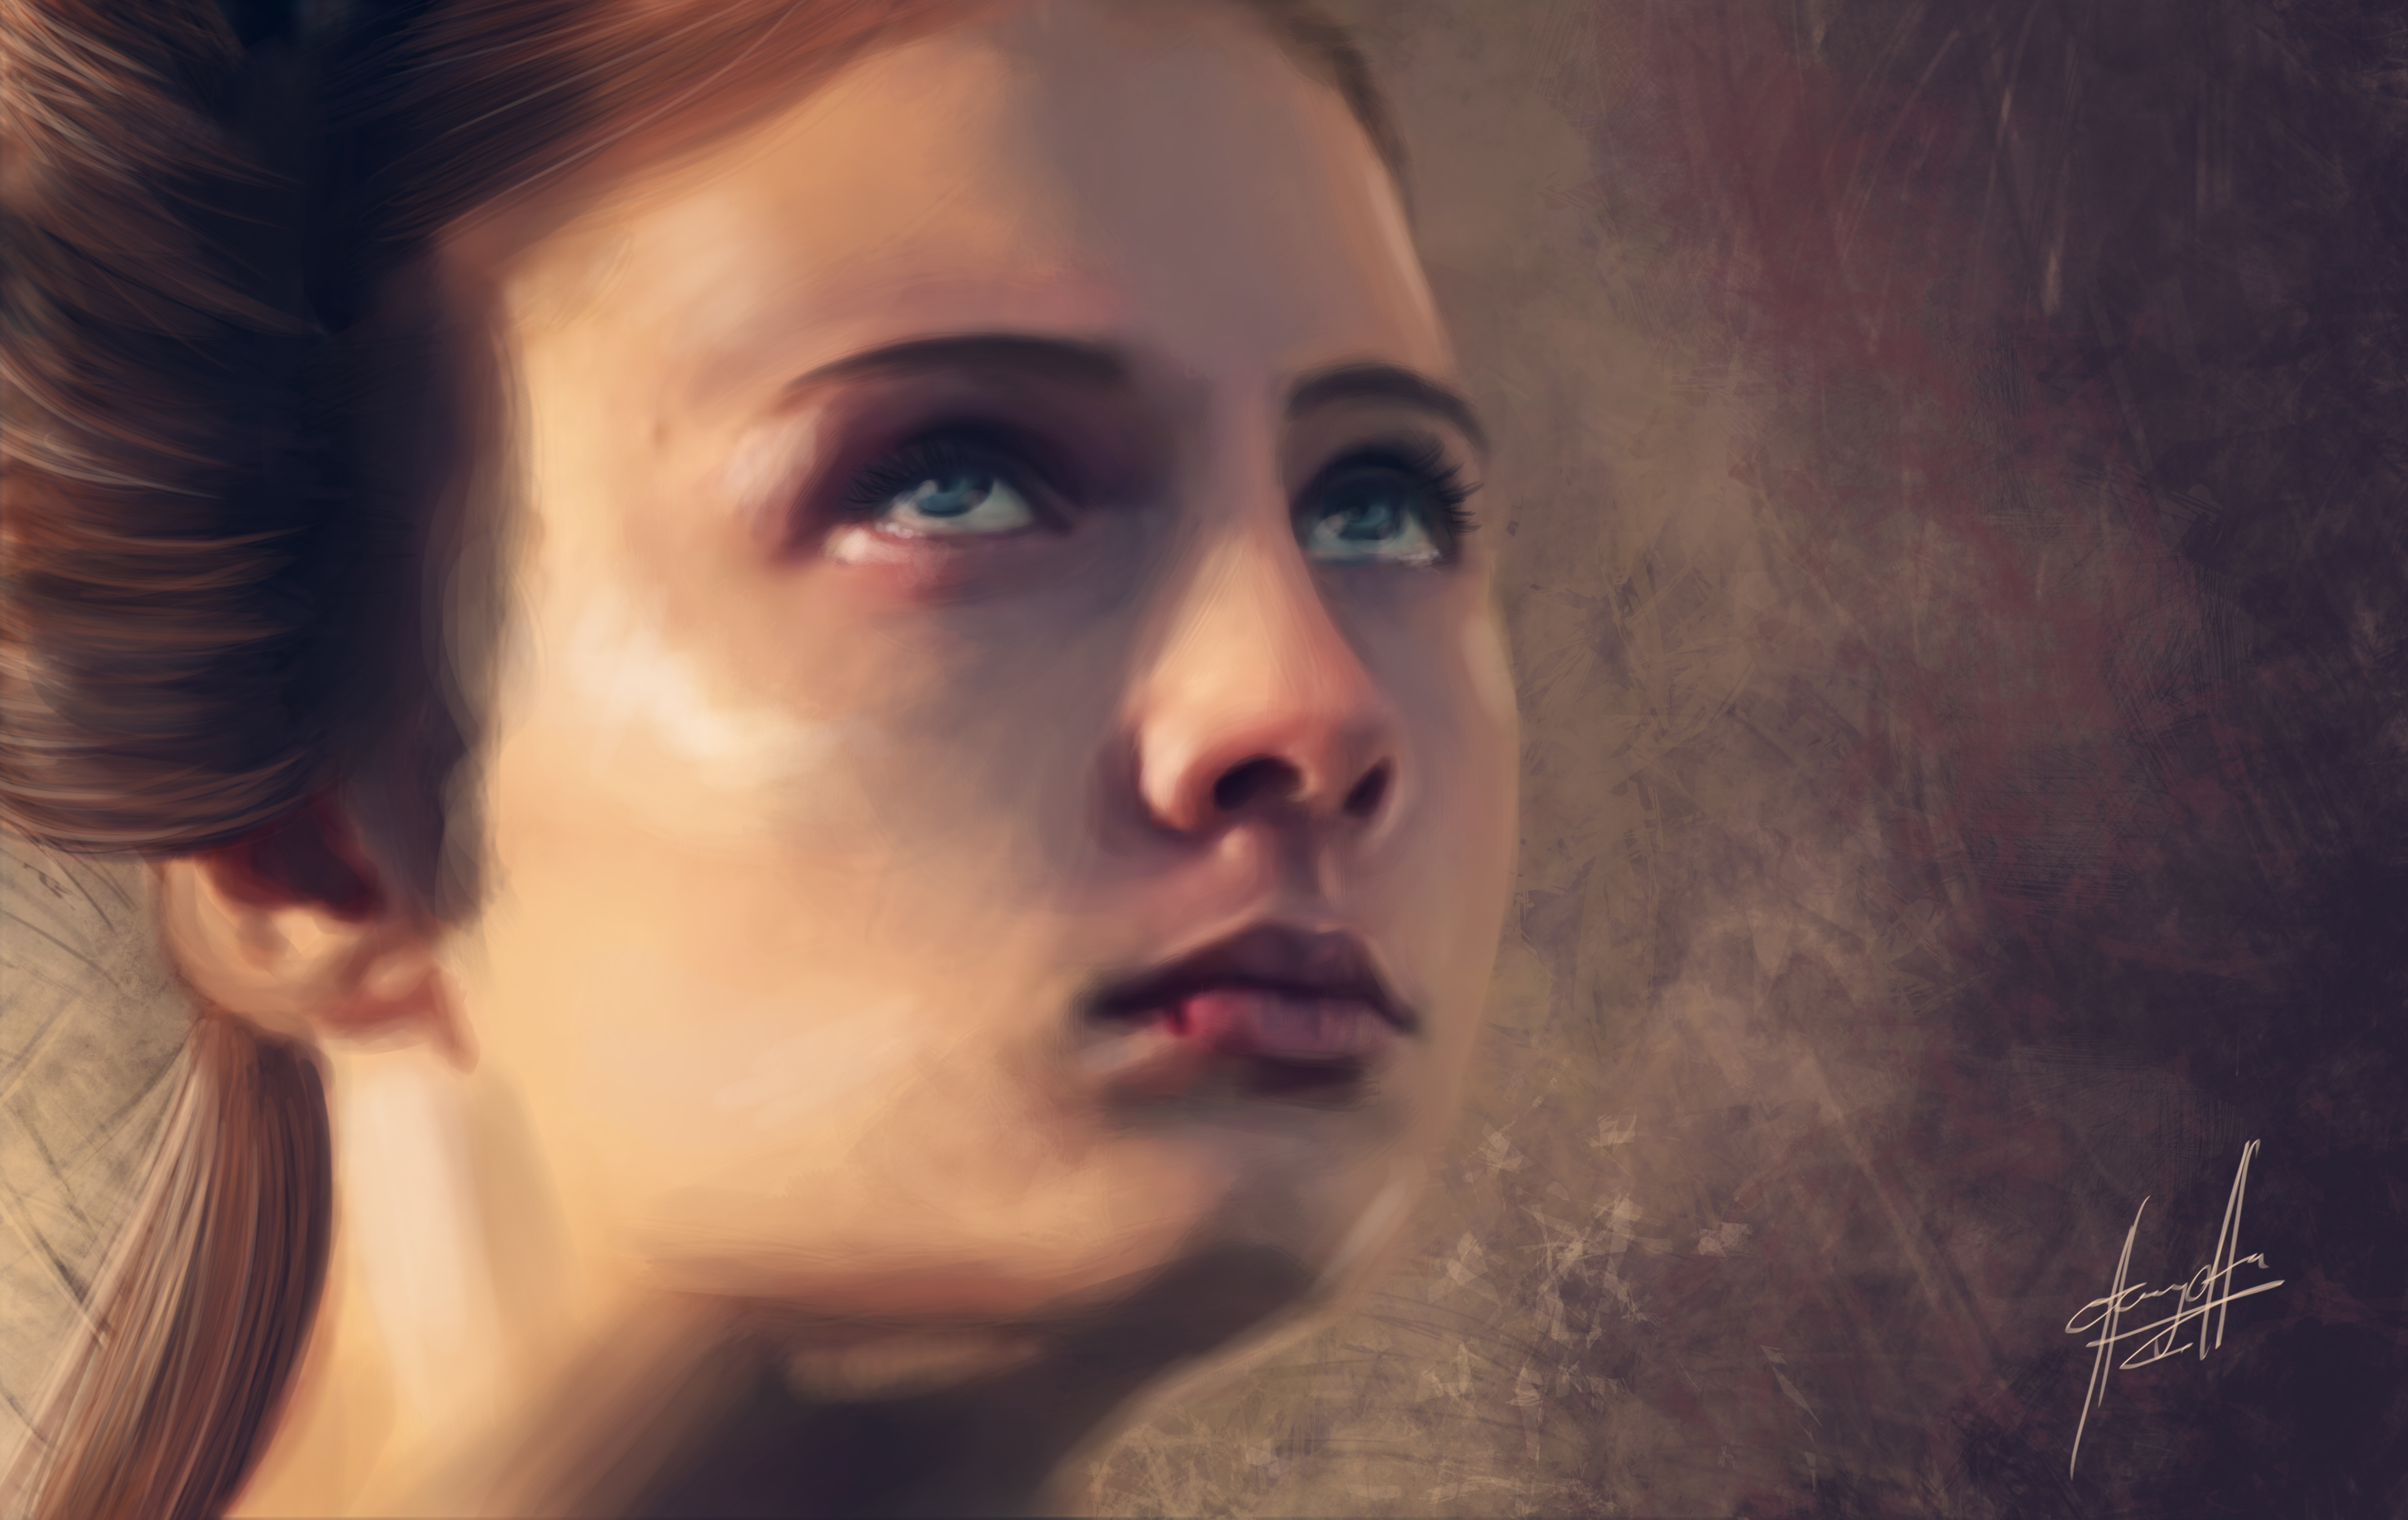 Descarga gratuita de fondo de pantalla para móvil de Juego De Tronos, Series De Televisión, Sansa Stark.